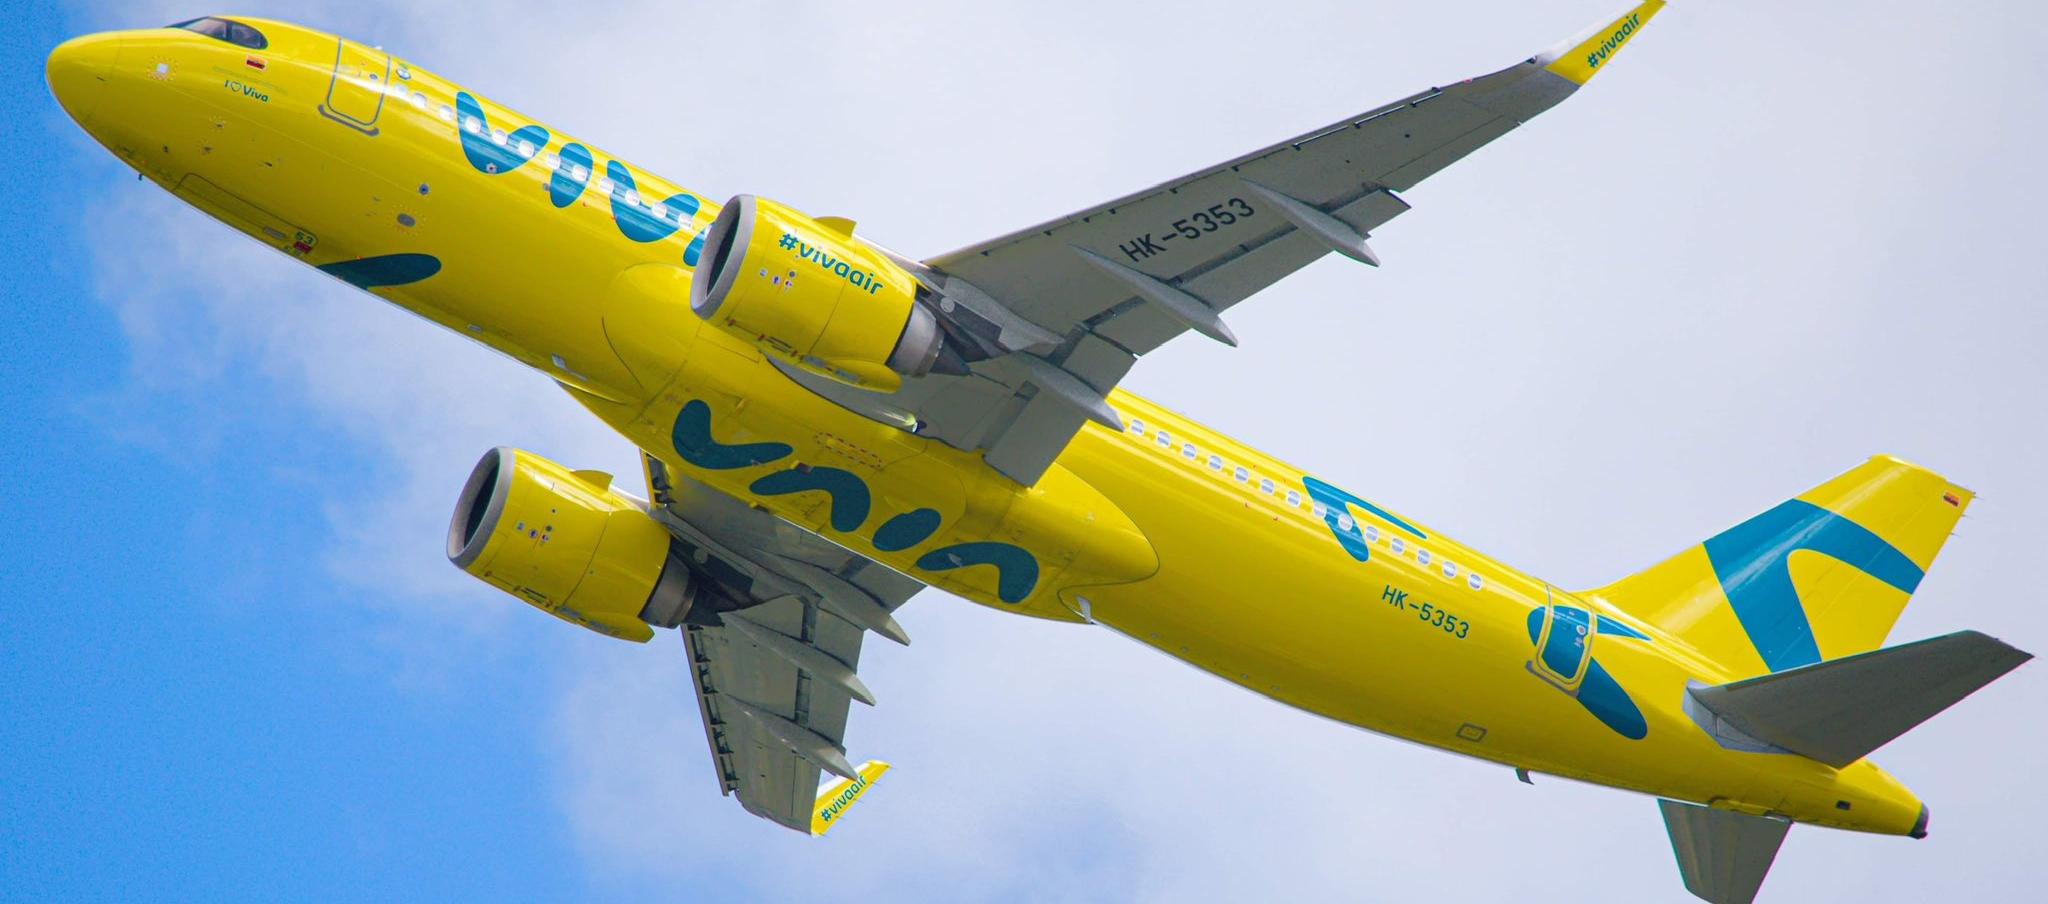 Viva Air operó durante 11 años en Colombia. 